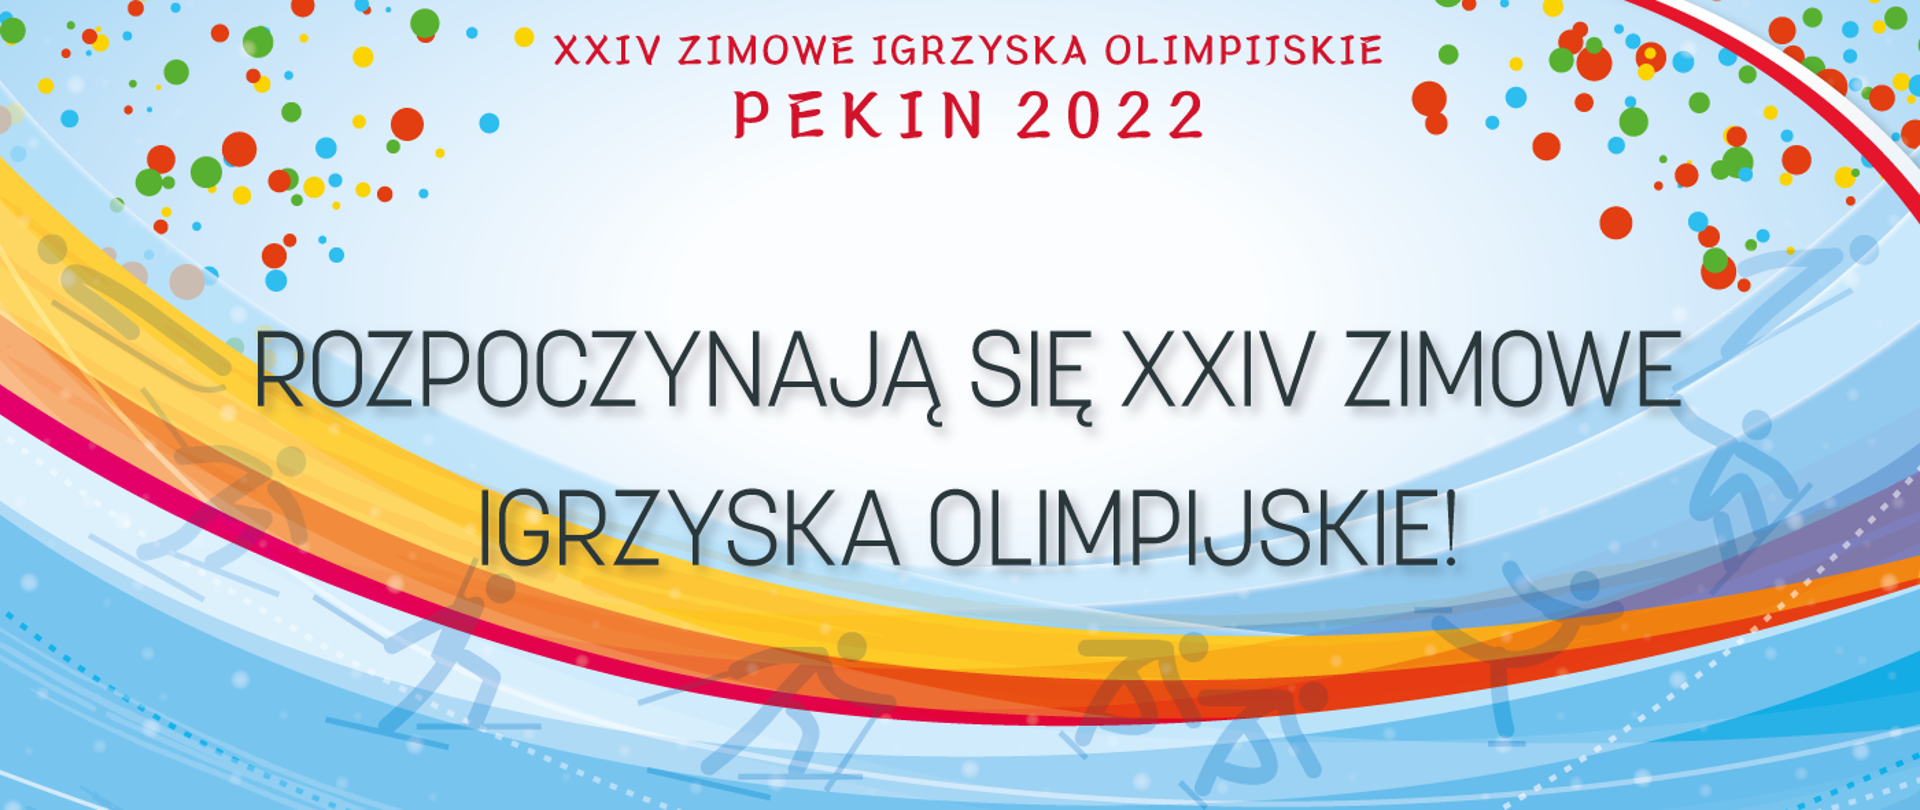 Grafika z napisem: rozpoczynają się XXIV Zimowe Igrzyska Olimpijskie oraz ikonkami sportów zimowych - między innymi postać narciarza, łyżwiarza szybkiego, łyżwiarza figurowego.